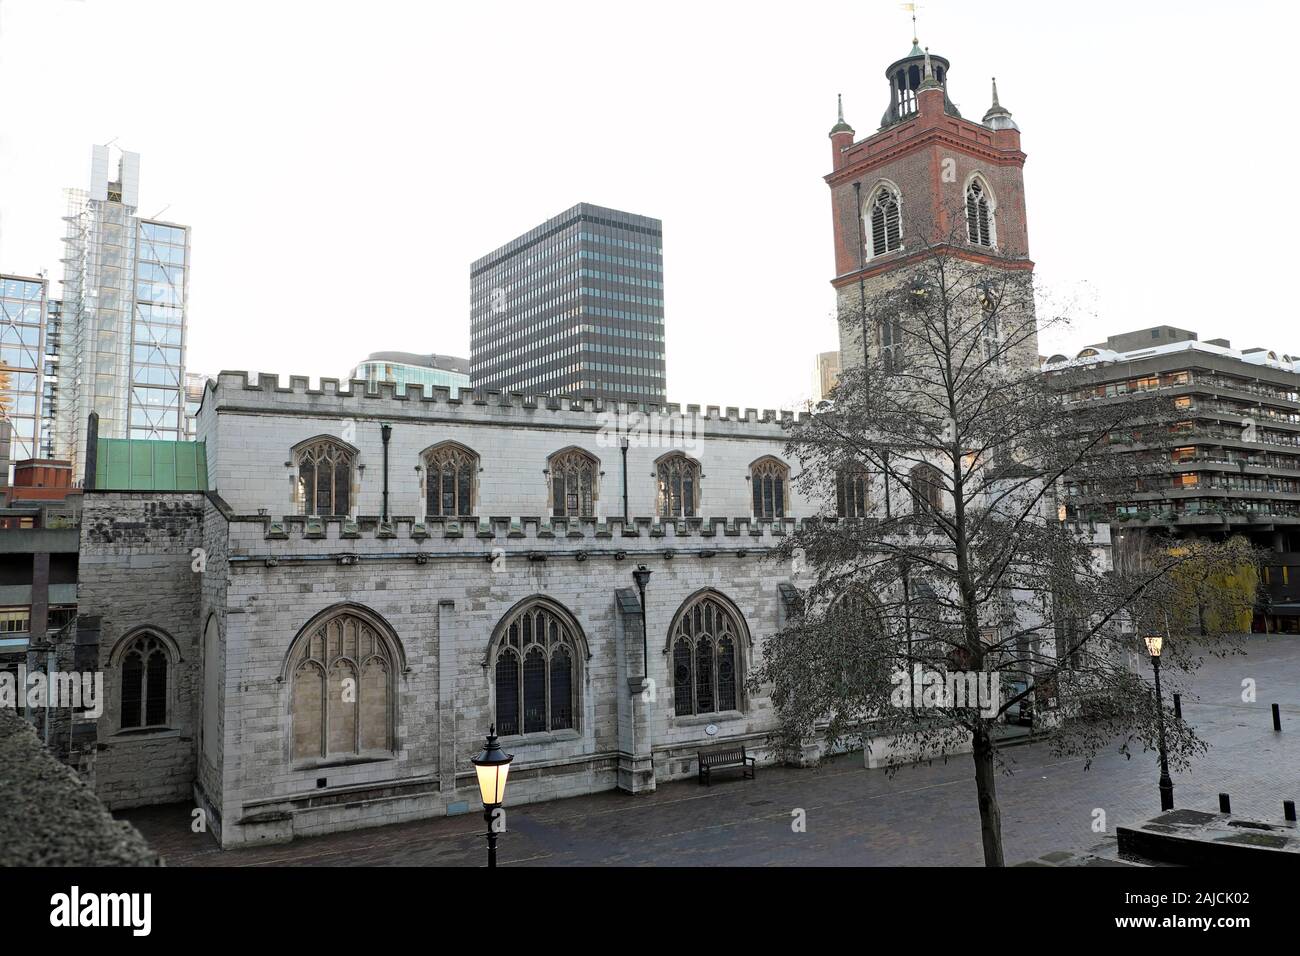 Une vue de St Giles sans église Cripplegate dans la ville de Londres EC2Y Royaume-Uni Grande-Bretagne KATHY DEWITT Banque D'Images